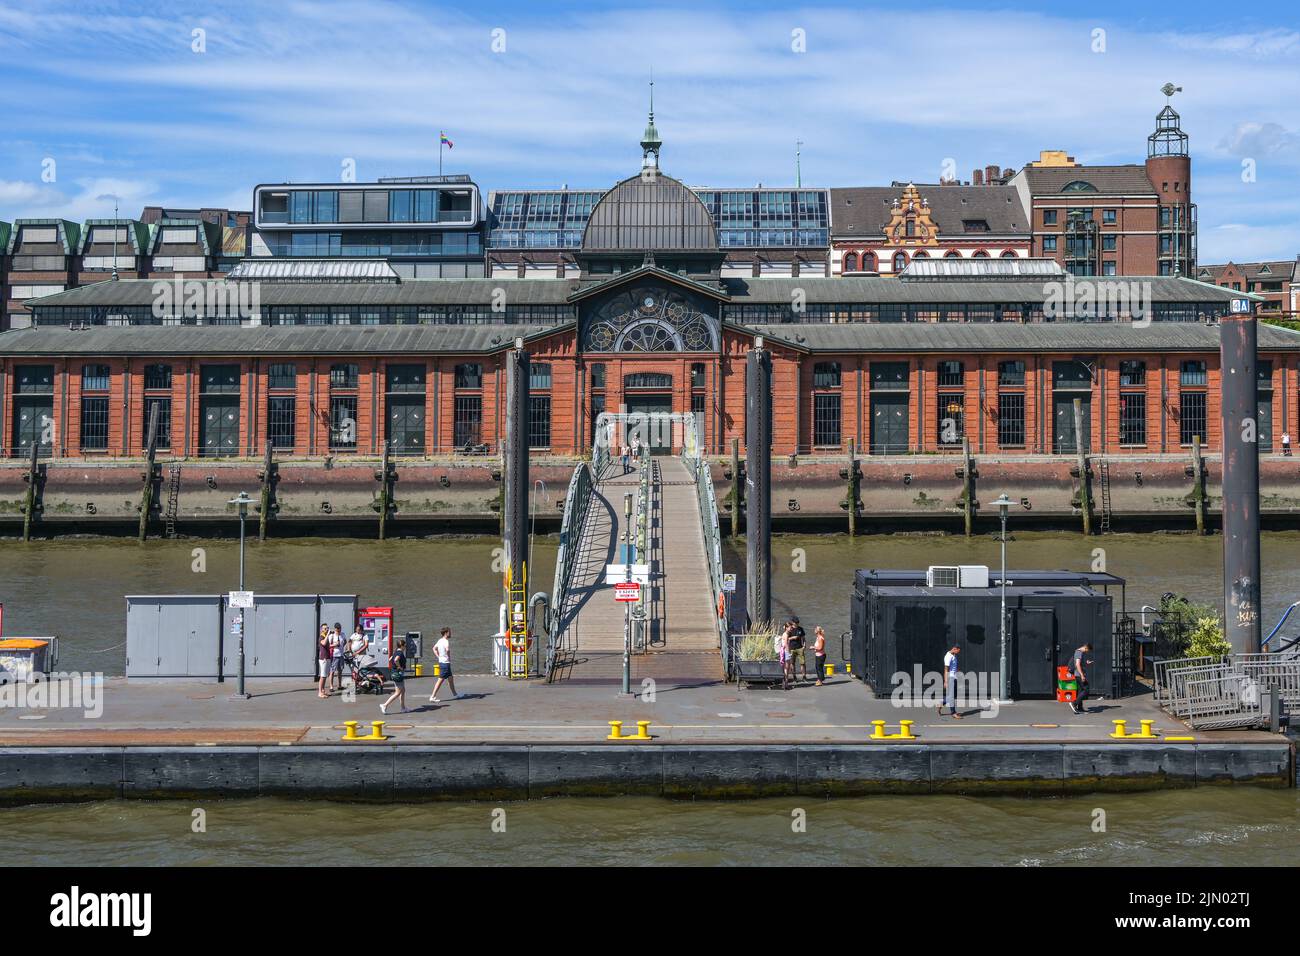 Hambourg, Allemagne, 3 août 2022: Salle historique de vente aux enchères de poissons à Altona à côté du célèbre marché aux poissons, aujourd'hui le bâtiment est utilisé pour des événements, brique rouge Banque D'Images